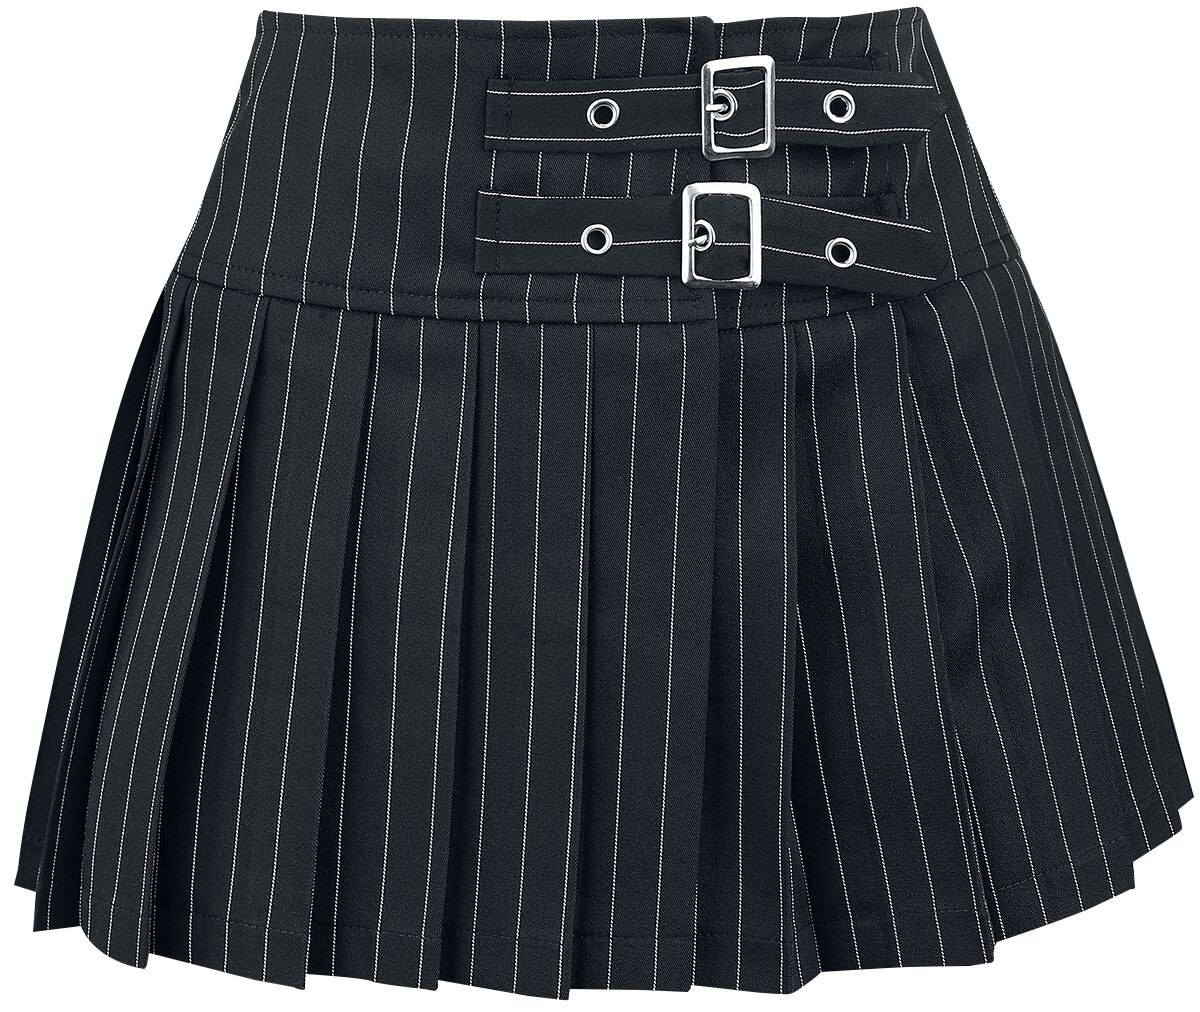 Banned Alternative - Gothic Kurzer Rock - Sisterhood Skirt - XS bis XL - für Damen - Größe L - schwarz/weiß